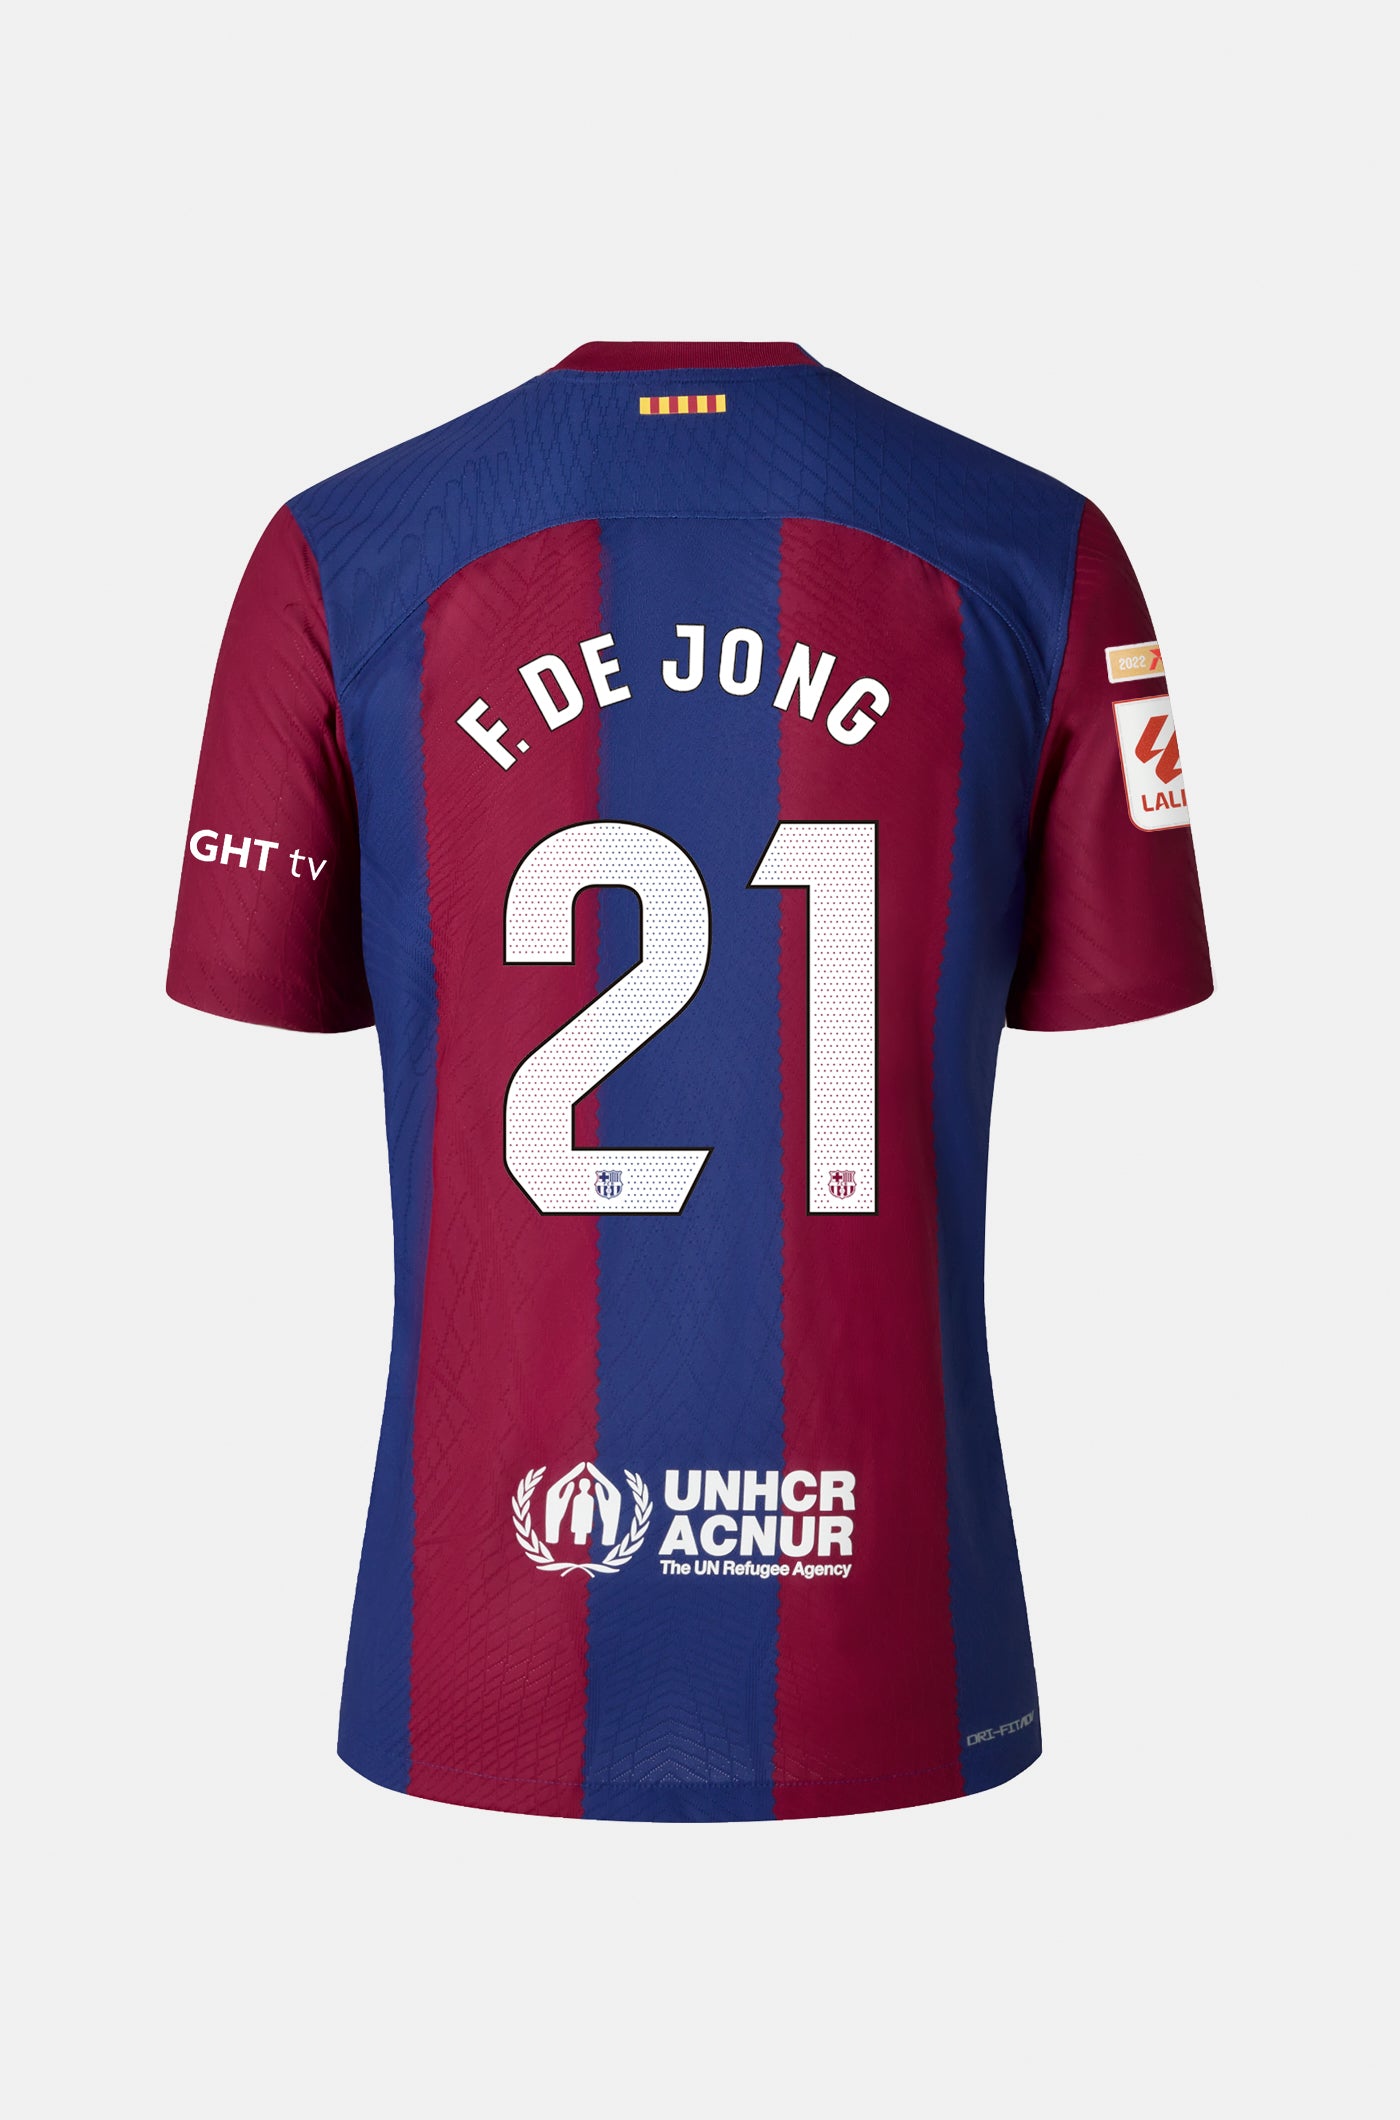 LFP FC Barcelona home shirt 23/24  - F. DE JONG